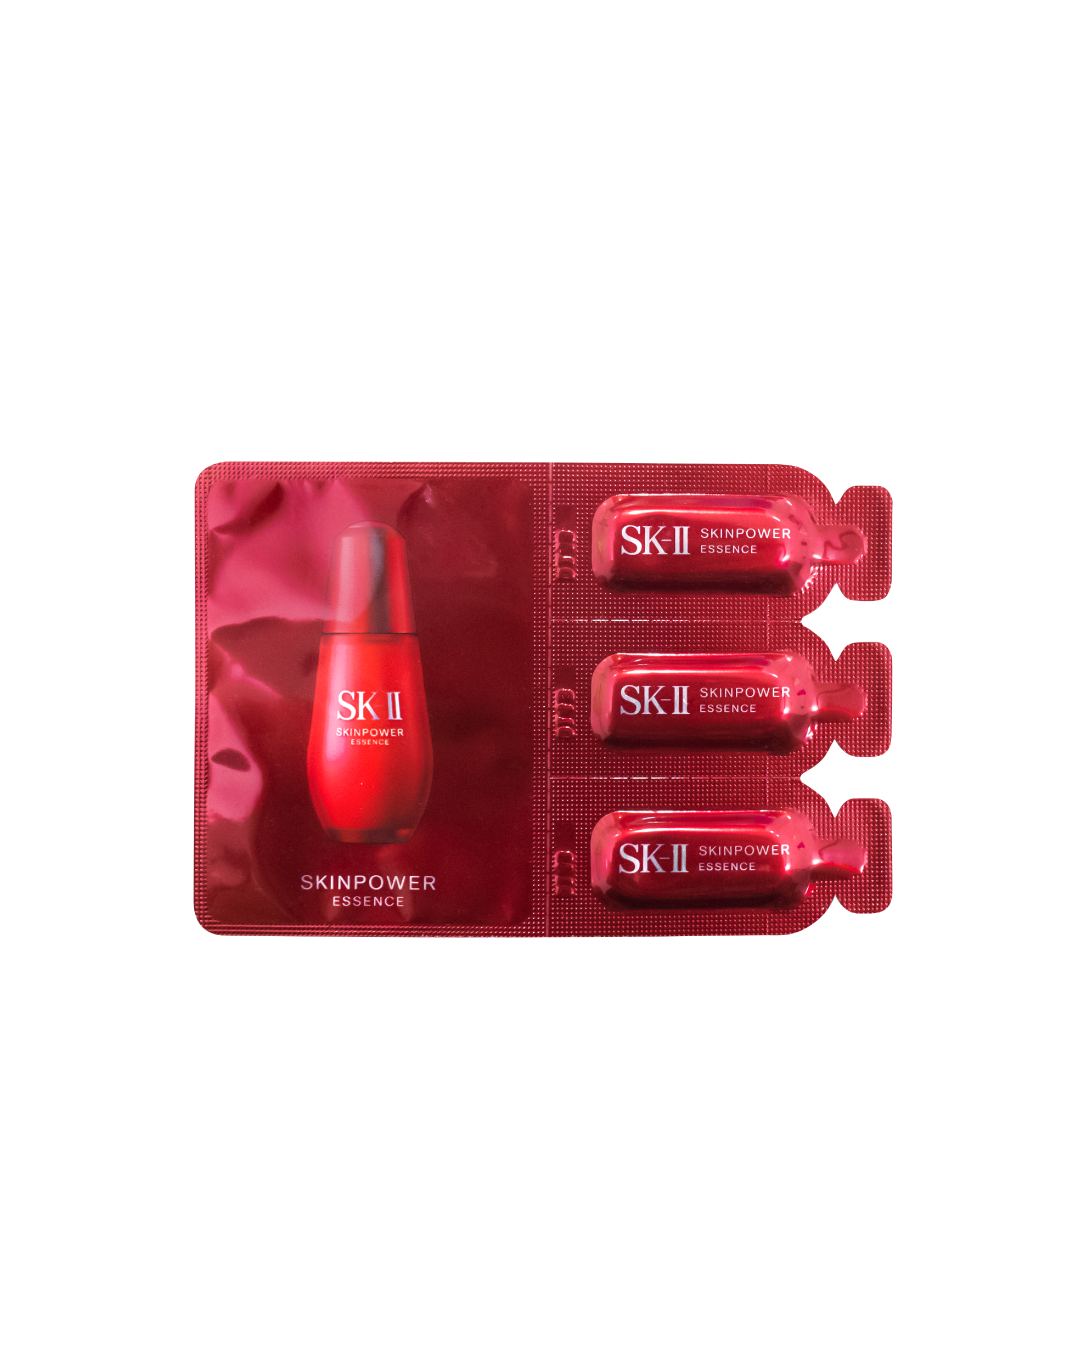 SK-II Skinpower Essence (1ml x 3) - Best Buy World Philippines